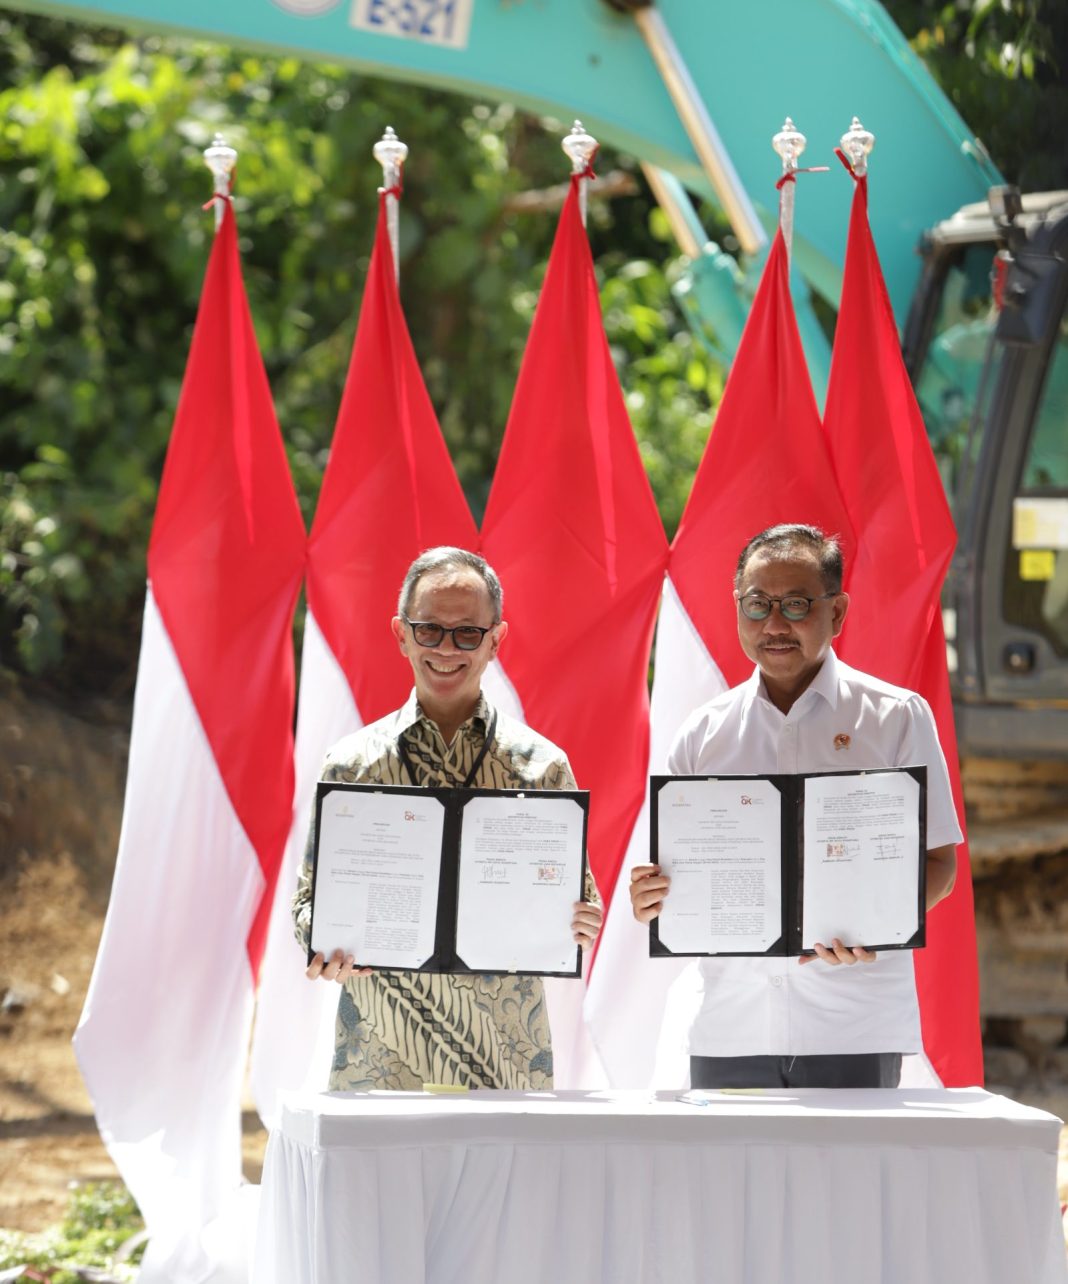 Otoritas Jasa Keuangan (OJK) menyepakati rencana pembangunan gedung kantor di area Ibu Kota Nusantara (IKN) melalui penandatanganan perjanjian dengan otorita IKN.